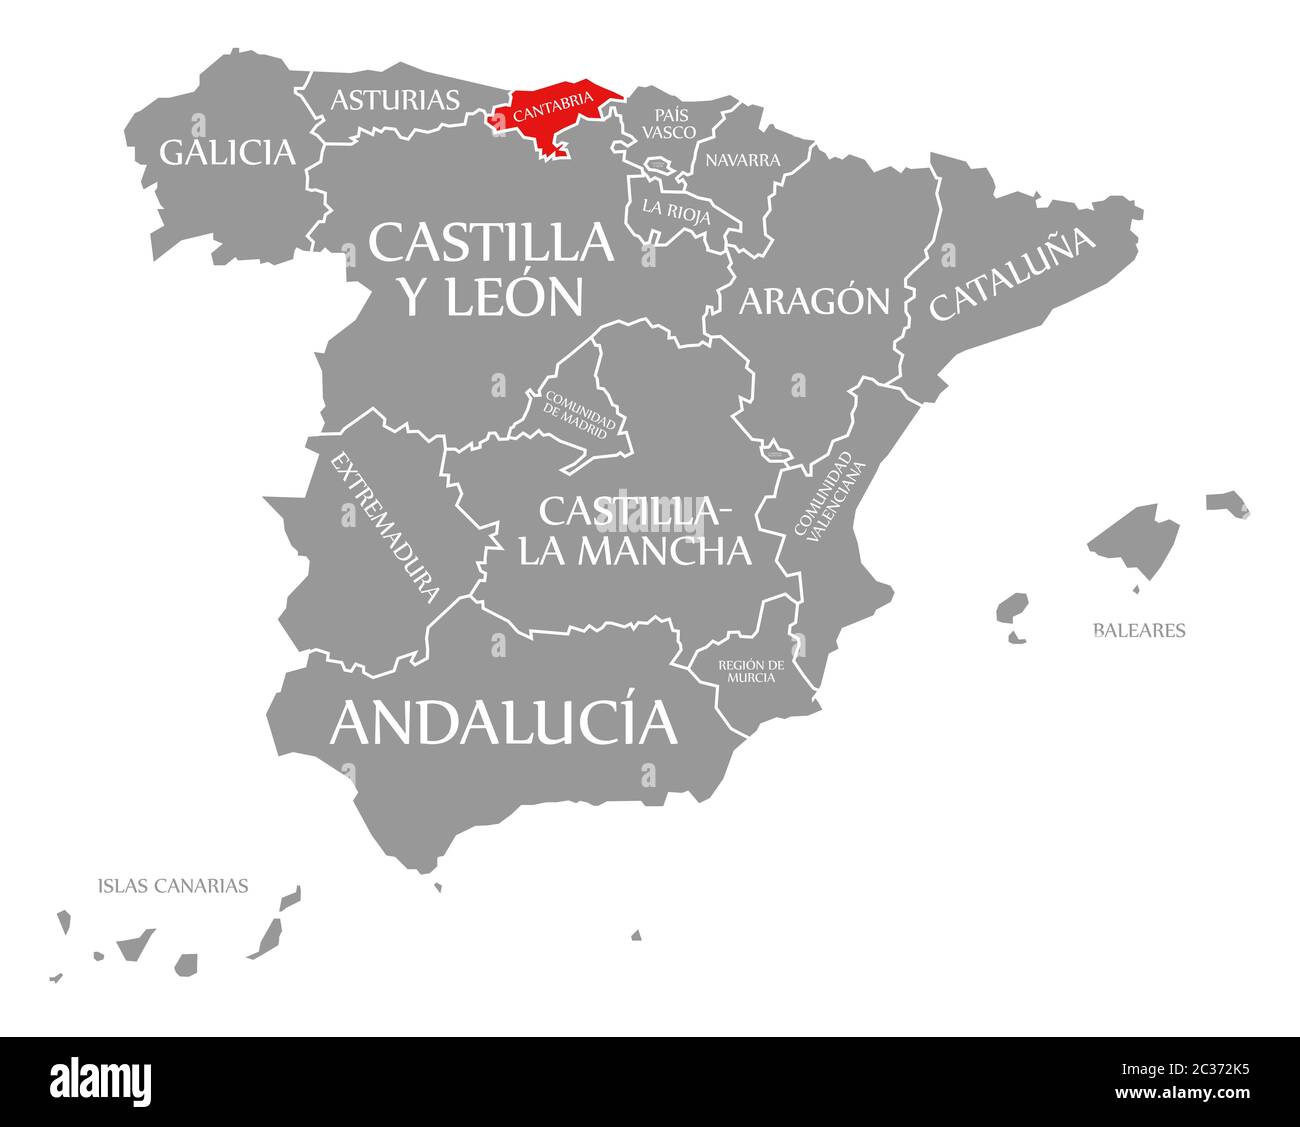 Cantabria evidenziata in rosso nella mappa della Spagna Foto Stock